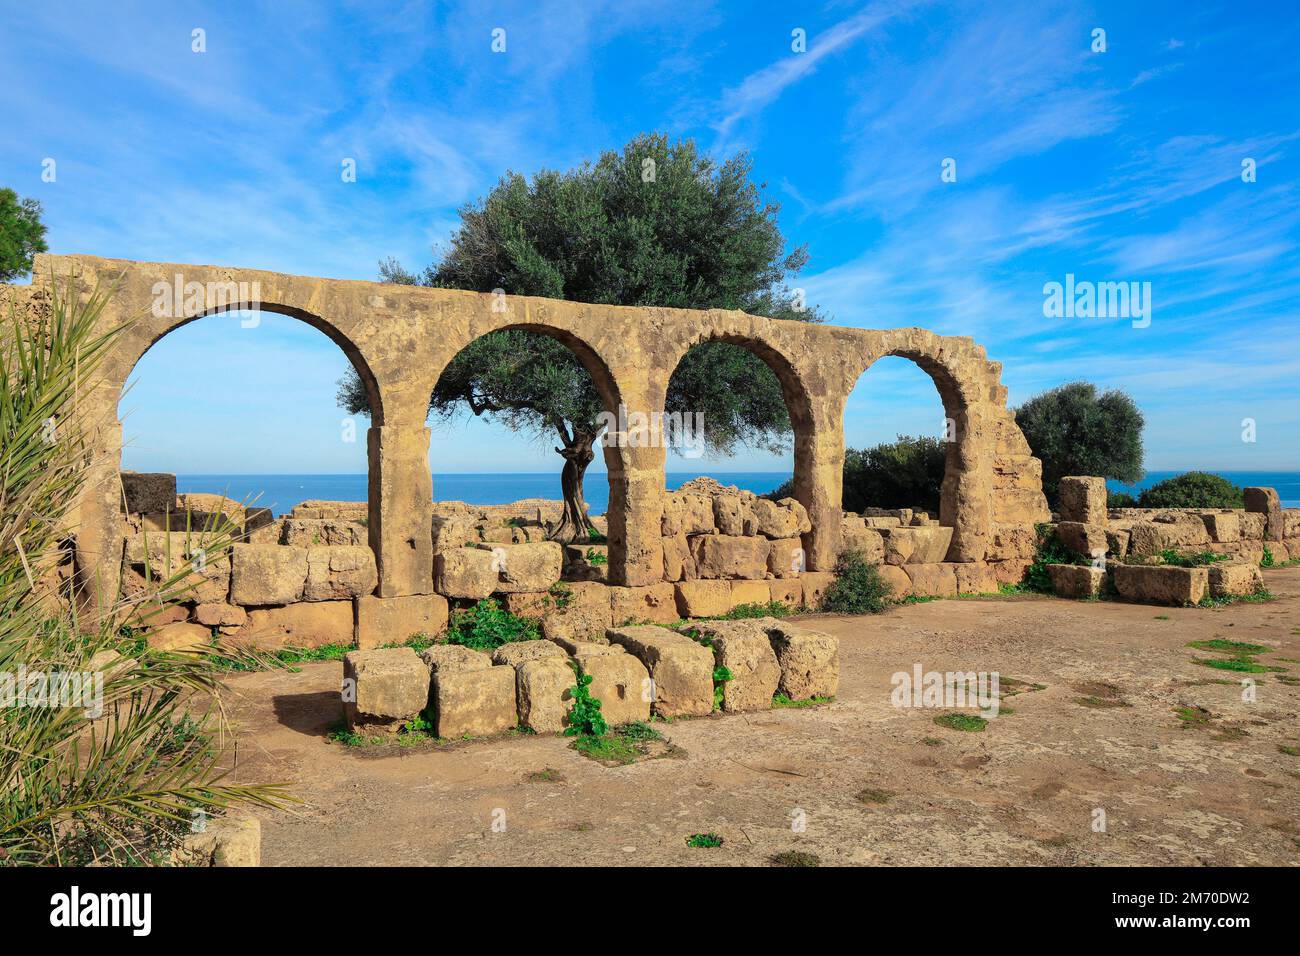 Ruines anciennes de Tipasa romaine avec la belle vue sur la côte méditerranéenne près de la ville de Tipaza, en Algérie Banque D'Images